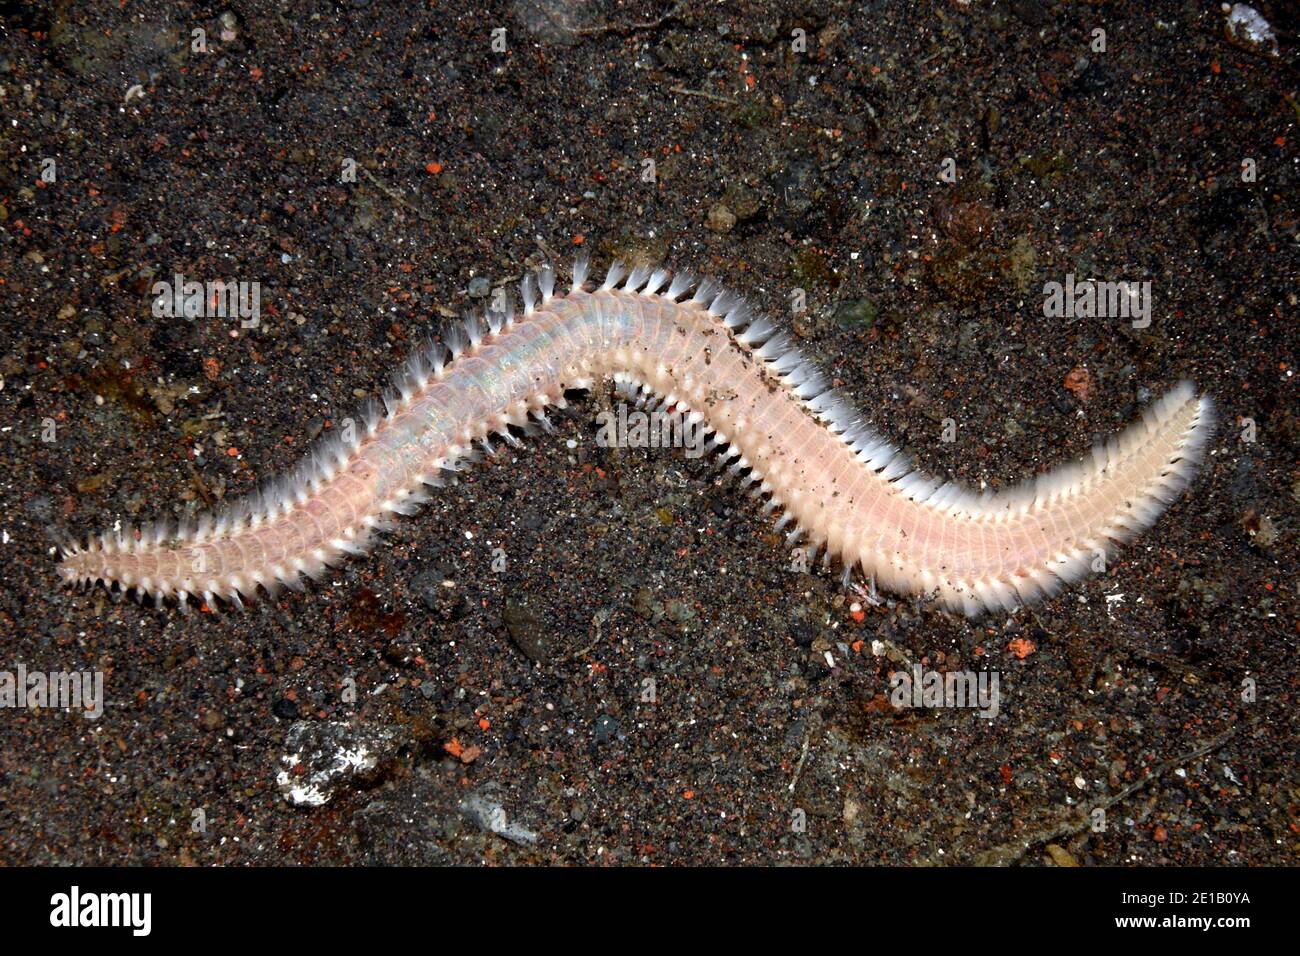 O Bristleworm Fireworm, posiblemente Eurythoe complanata, o Pherecardia Chloeia sp o sp.Tulamben, Bali, Indonesia. Bali, mar, océano Índico Foto de stock